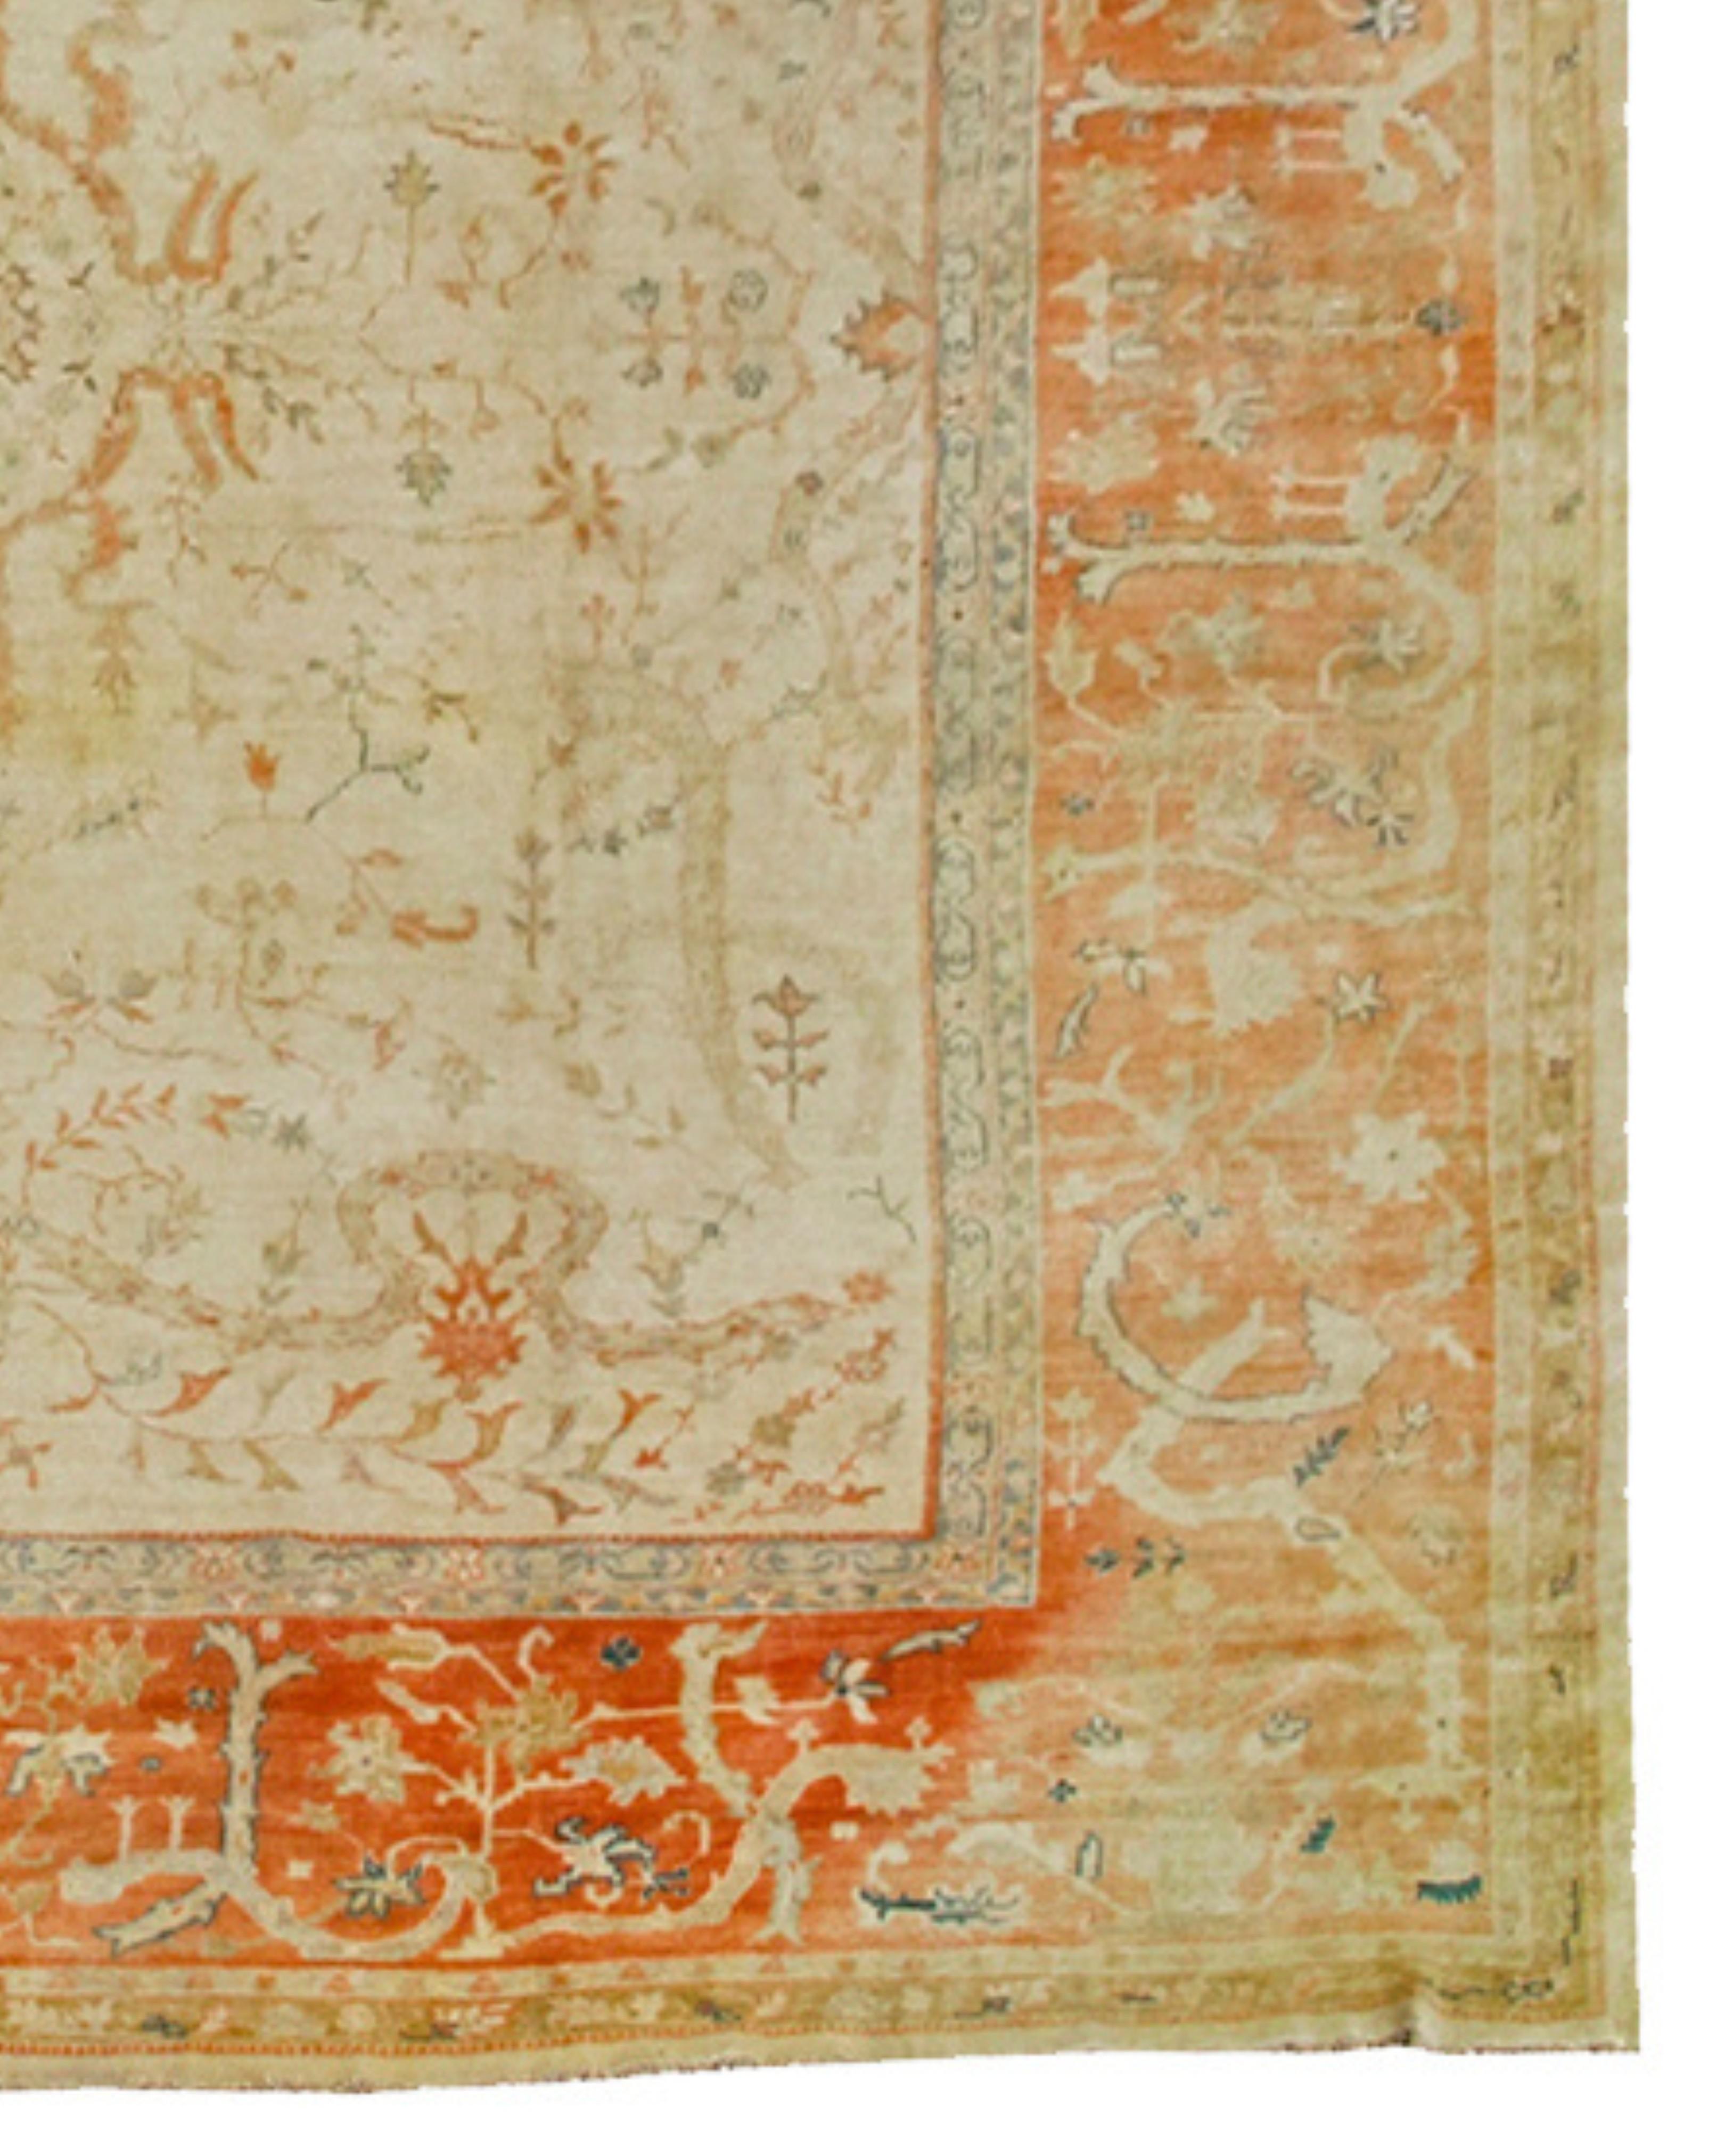 Antiker großer übergroßer anatolischer Borlu-Teppich, frühes 20. Jahrhundert

Antike Borlu-Teppiche aus Westanatolien kombinieren die sanften Töne der benachbarten Oushak-Teppiche mit einer robusteren und engeren Webart. Der helle elfenbeinfarbene